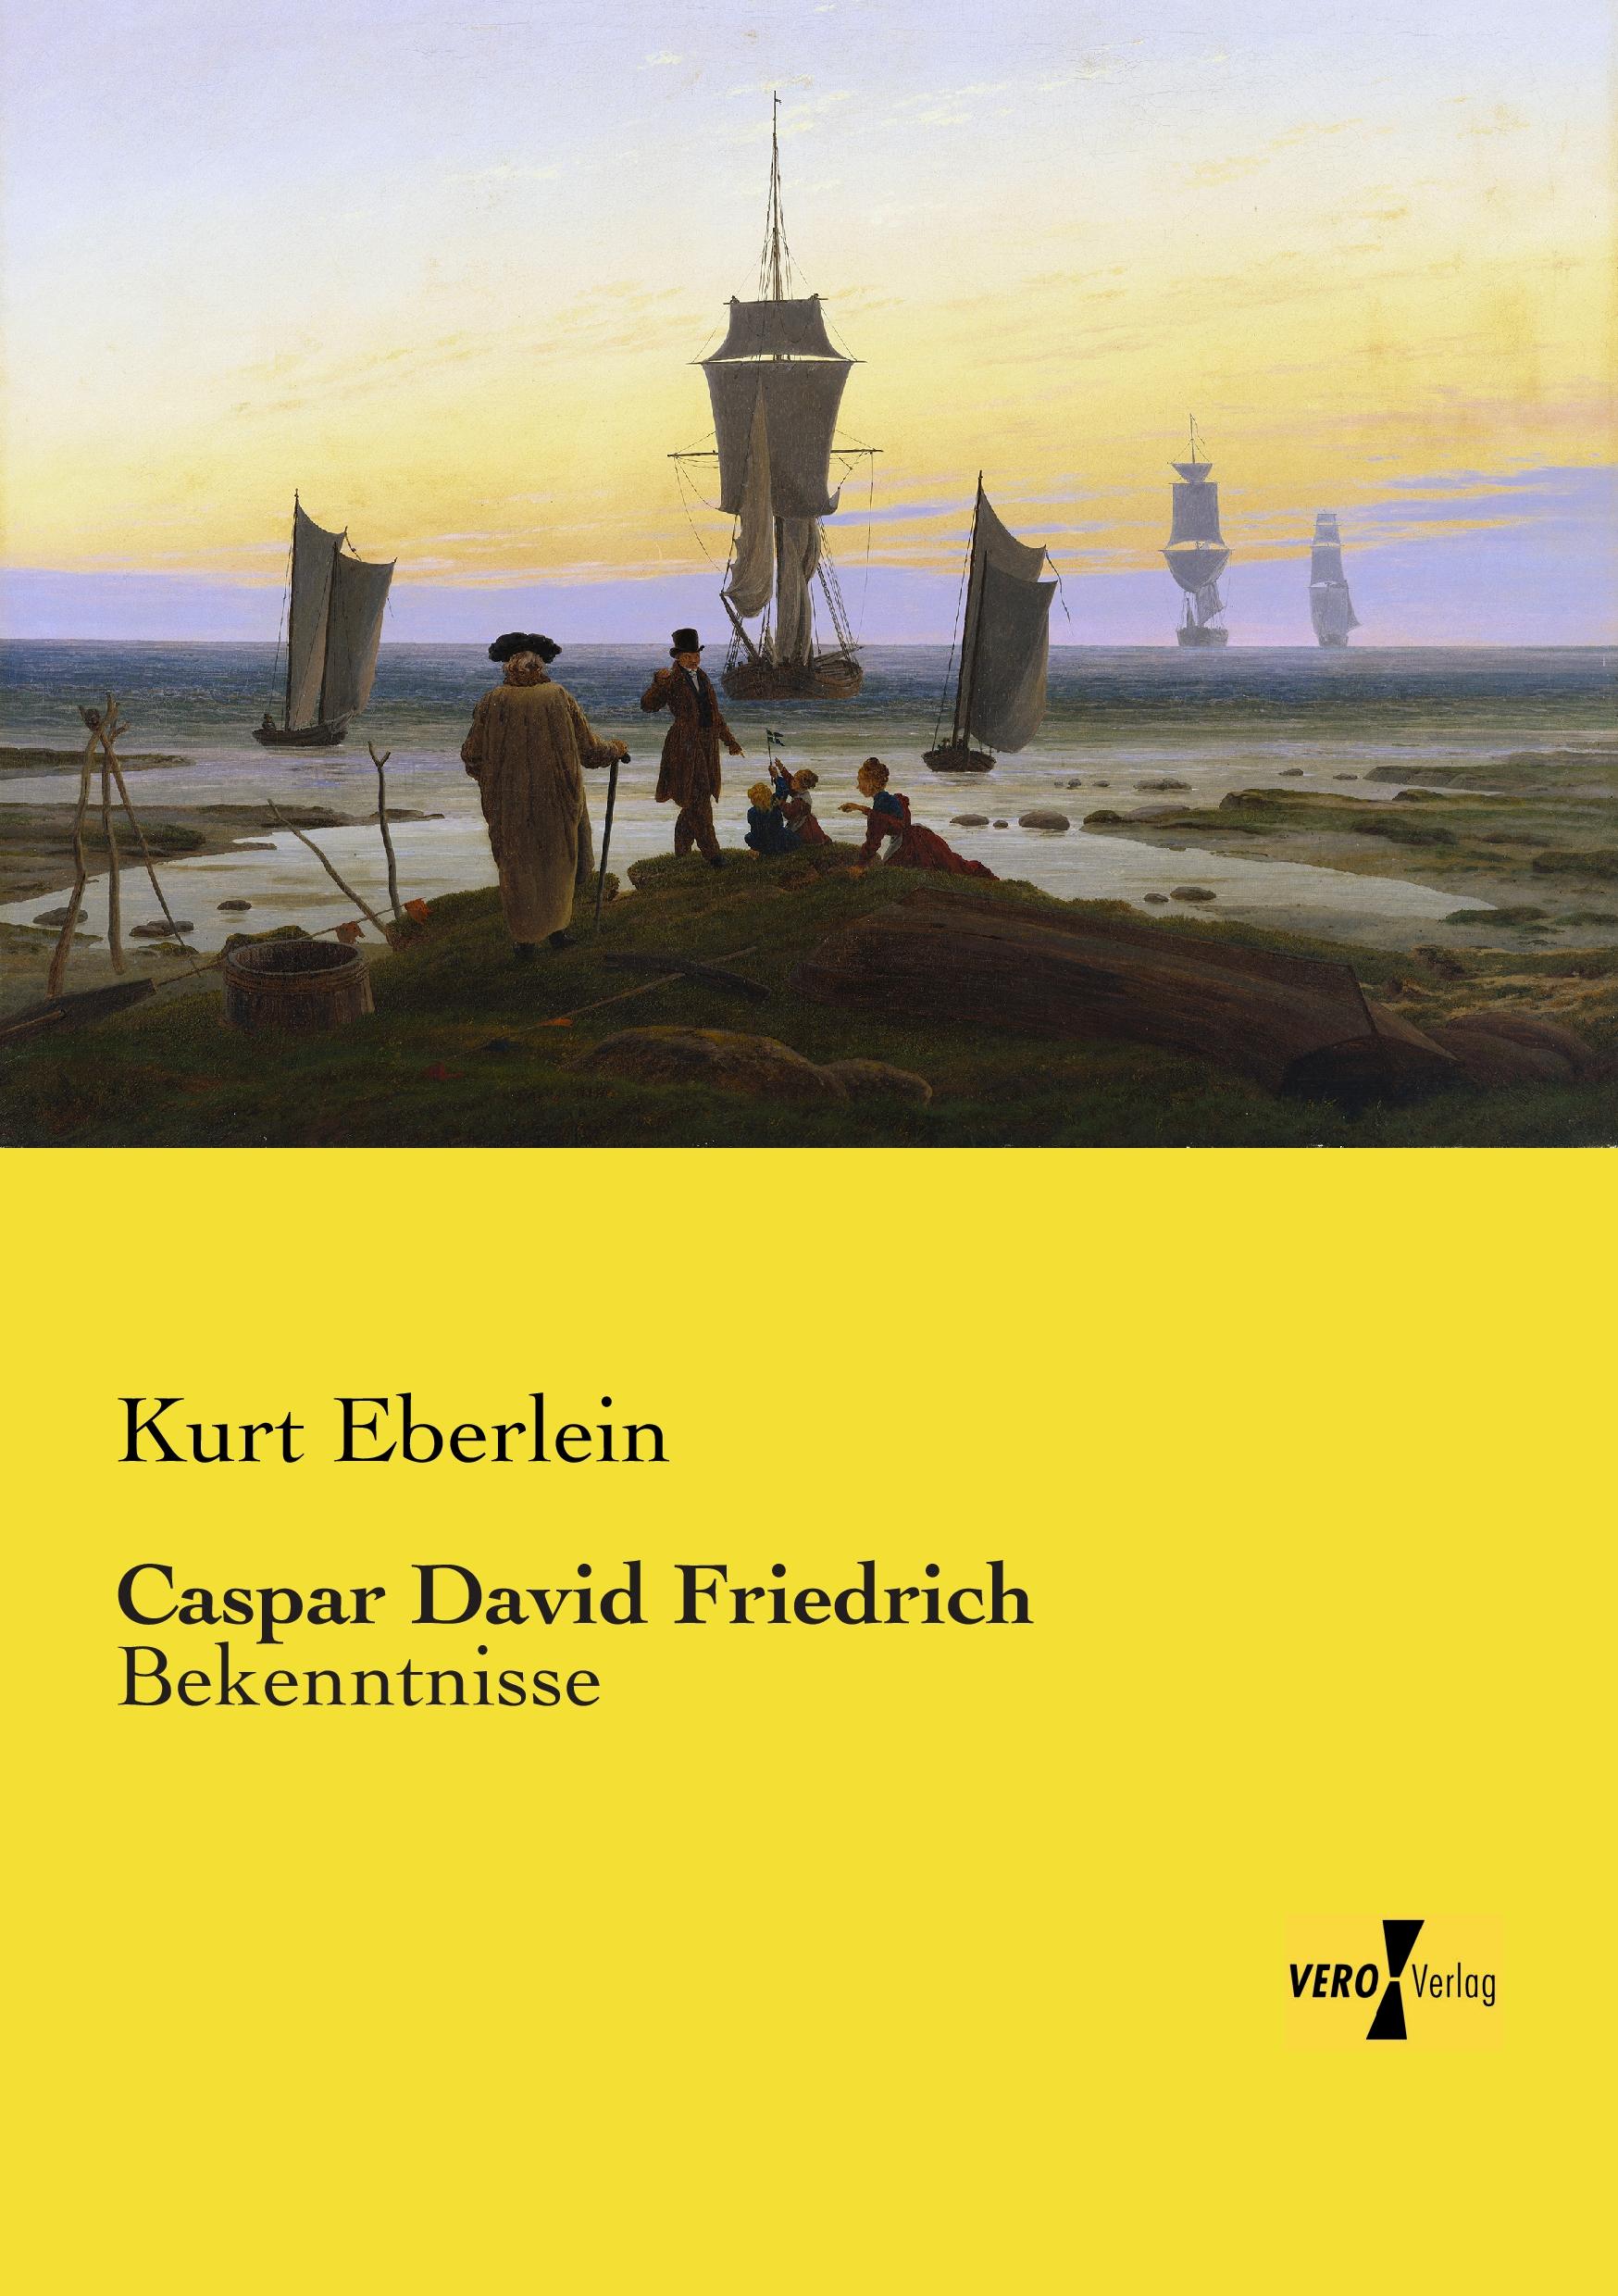 Caspar David Friedrich / Bekenntnisse / Kurt Eberlein / Taschenbuch / Paperback / 464 S. / Deutsch / 2019 / Vero Verlag / EAN 9783957387653 - Eberlein, Kurt